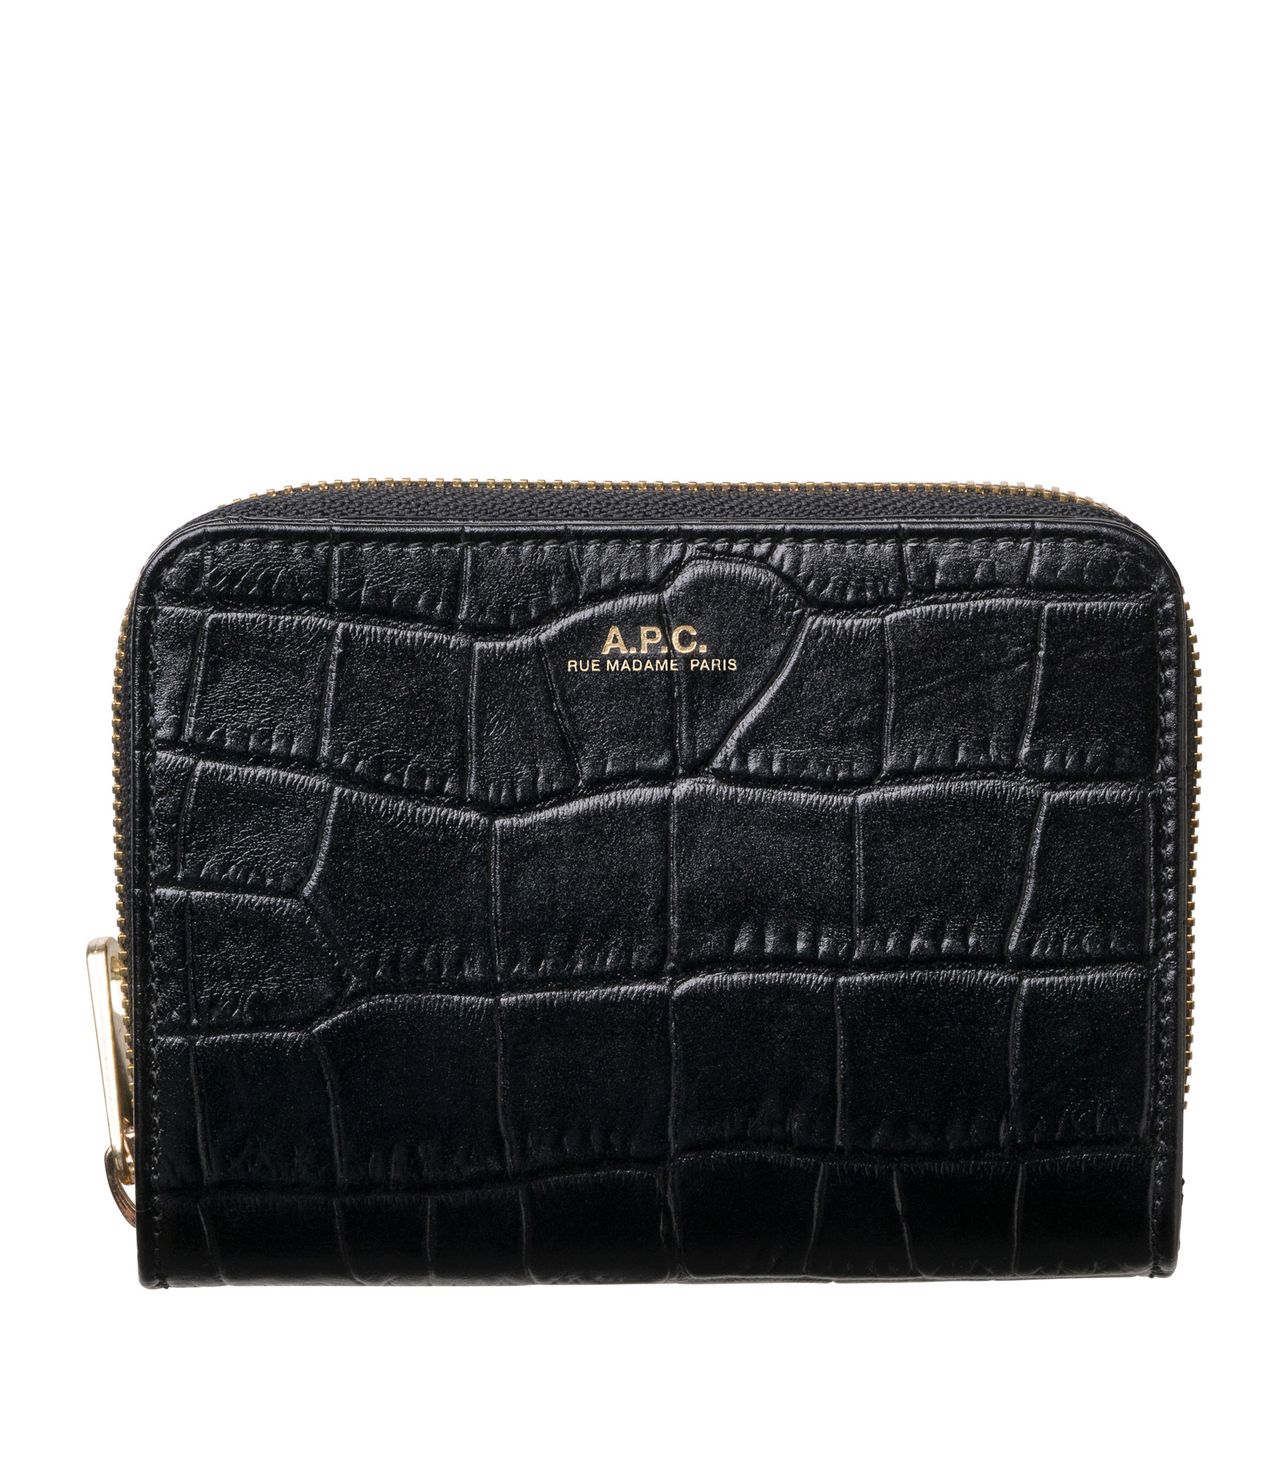 Emmanuelle compact wallet BLACK APC